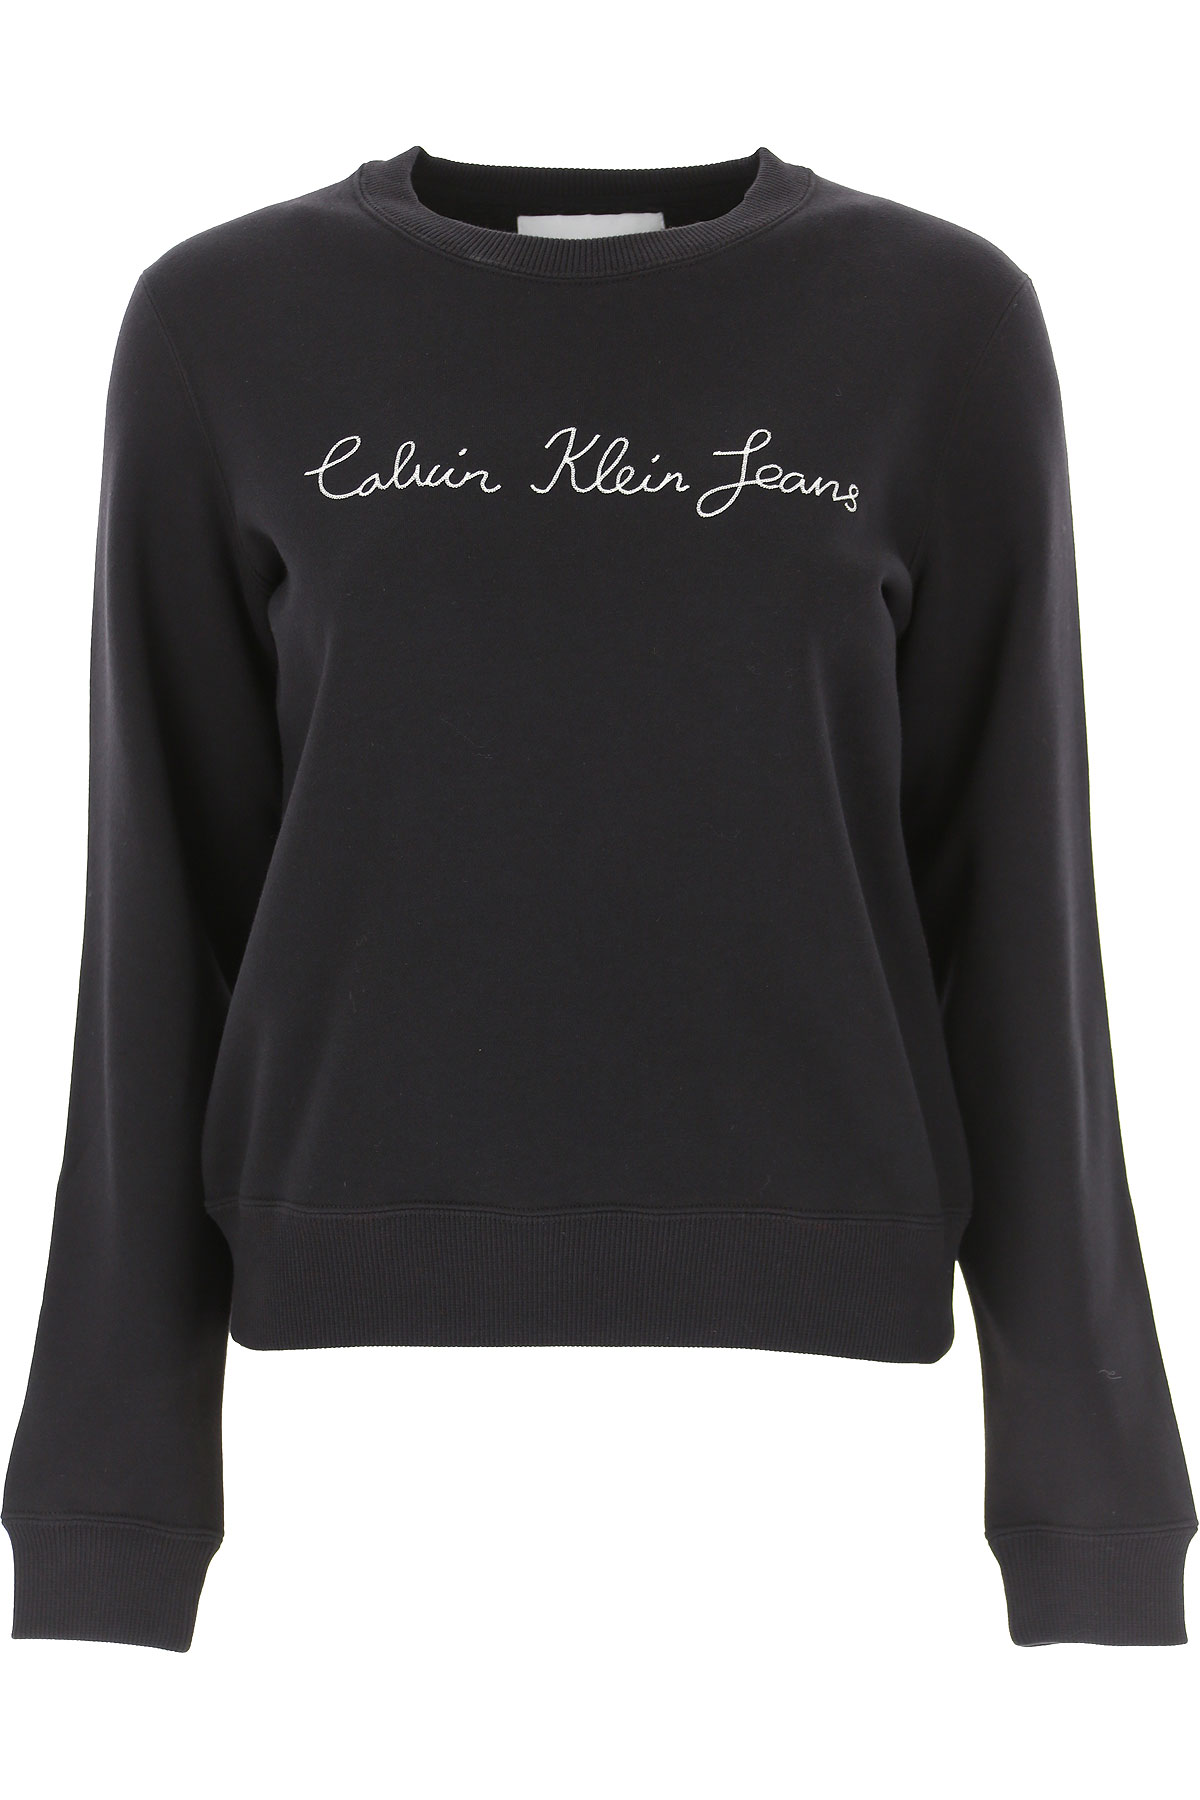 Calvin Klein Sweatshirt für Damen, Kapuzenpulli, Hoodie, Sweats Günstig im Sale, Schwarz, Baumwolle, 2017, 40 44 M